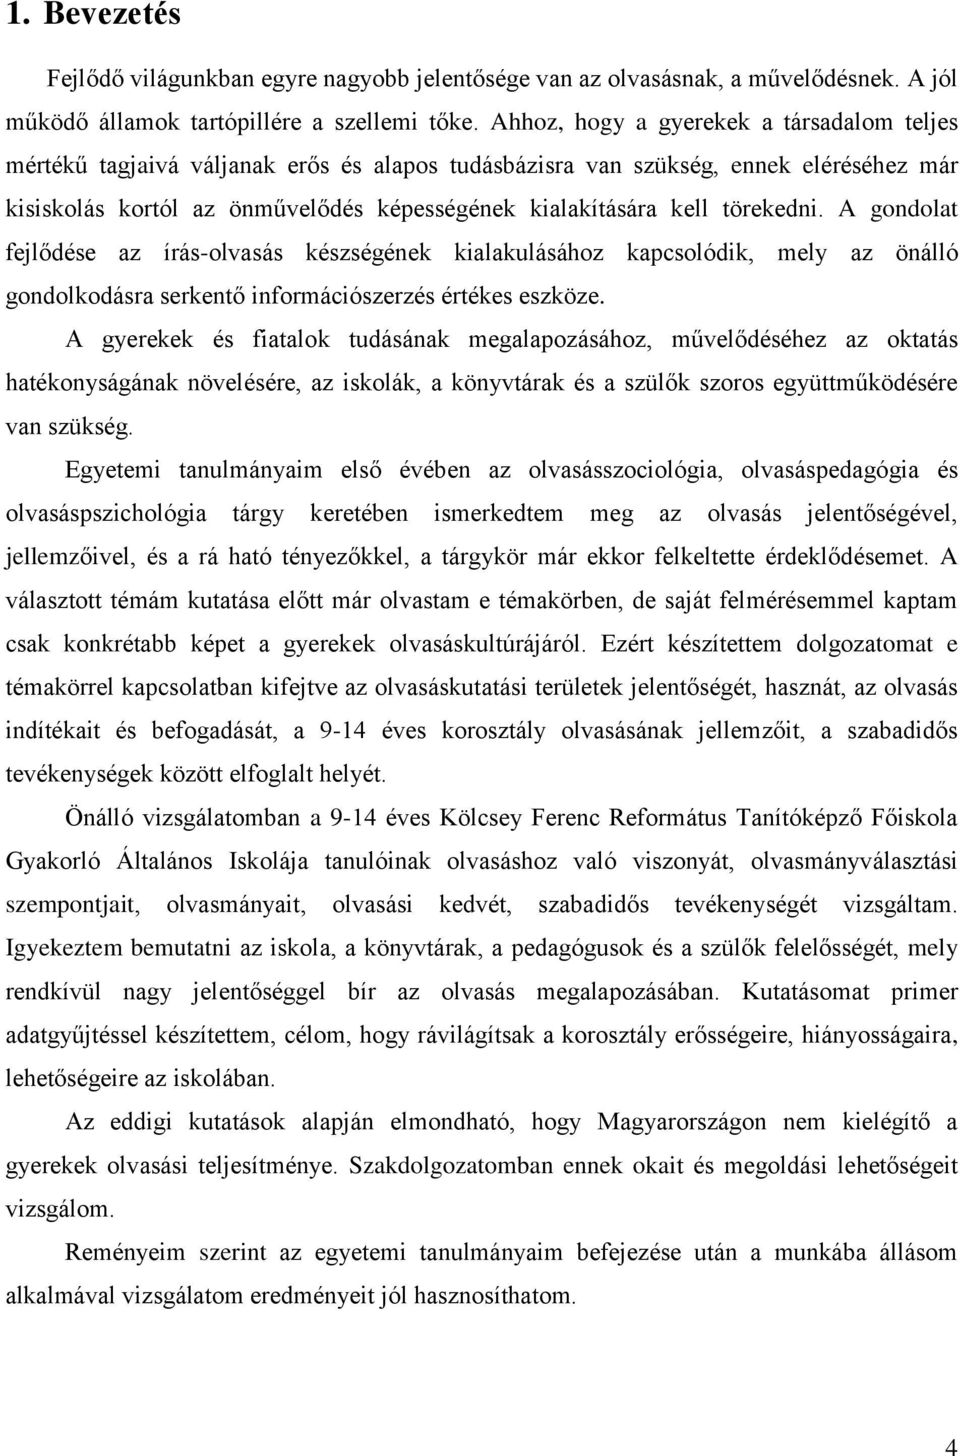 9-14 ÉVESEK OLVASÁSKULTÚRÁJA MAGYARORSZÁGON - PDF Ingyenes letöltés